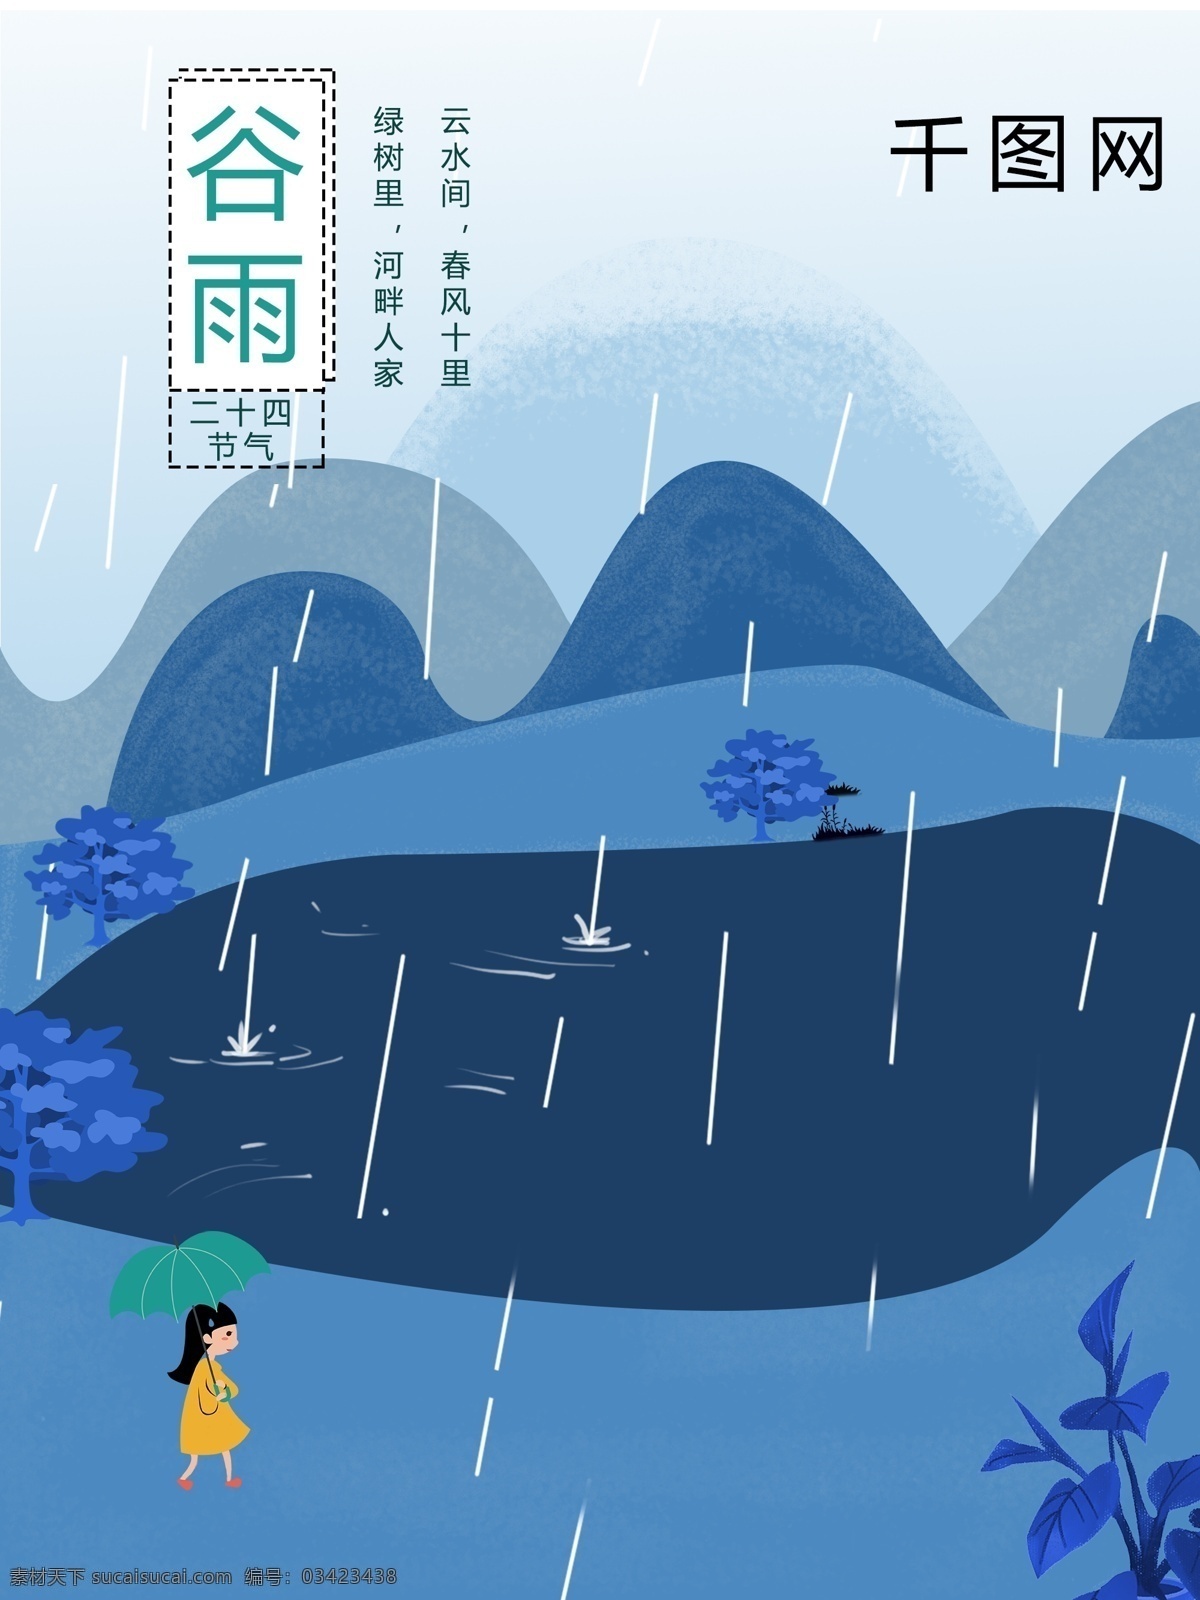 春天 下雨 剪影 谷雨 海报 雨水 单页 dm 青色 节气 节日